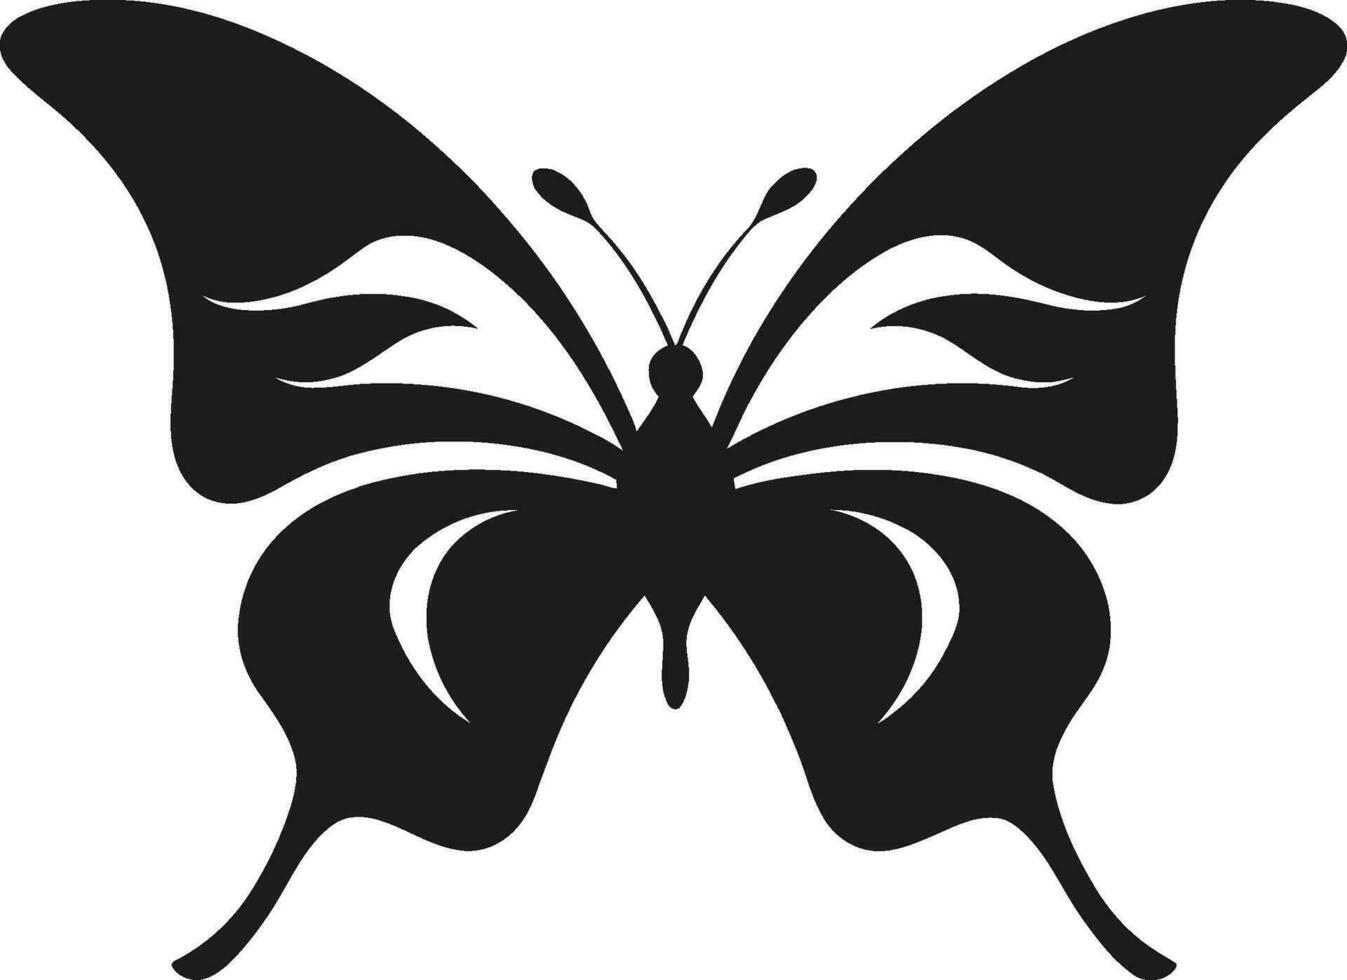 Black Beauty Takes Flight Butterfly Symbol Elegance in Monochrome Black Butterfly Logo vector